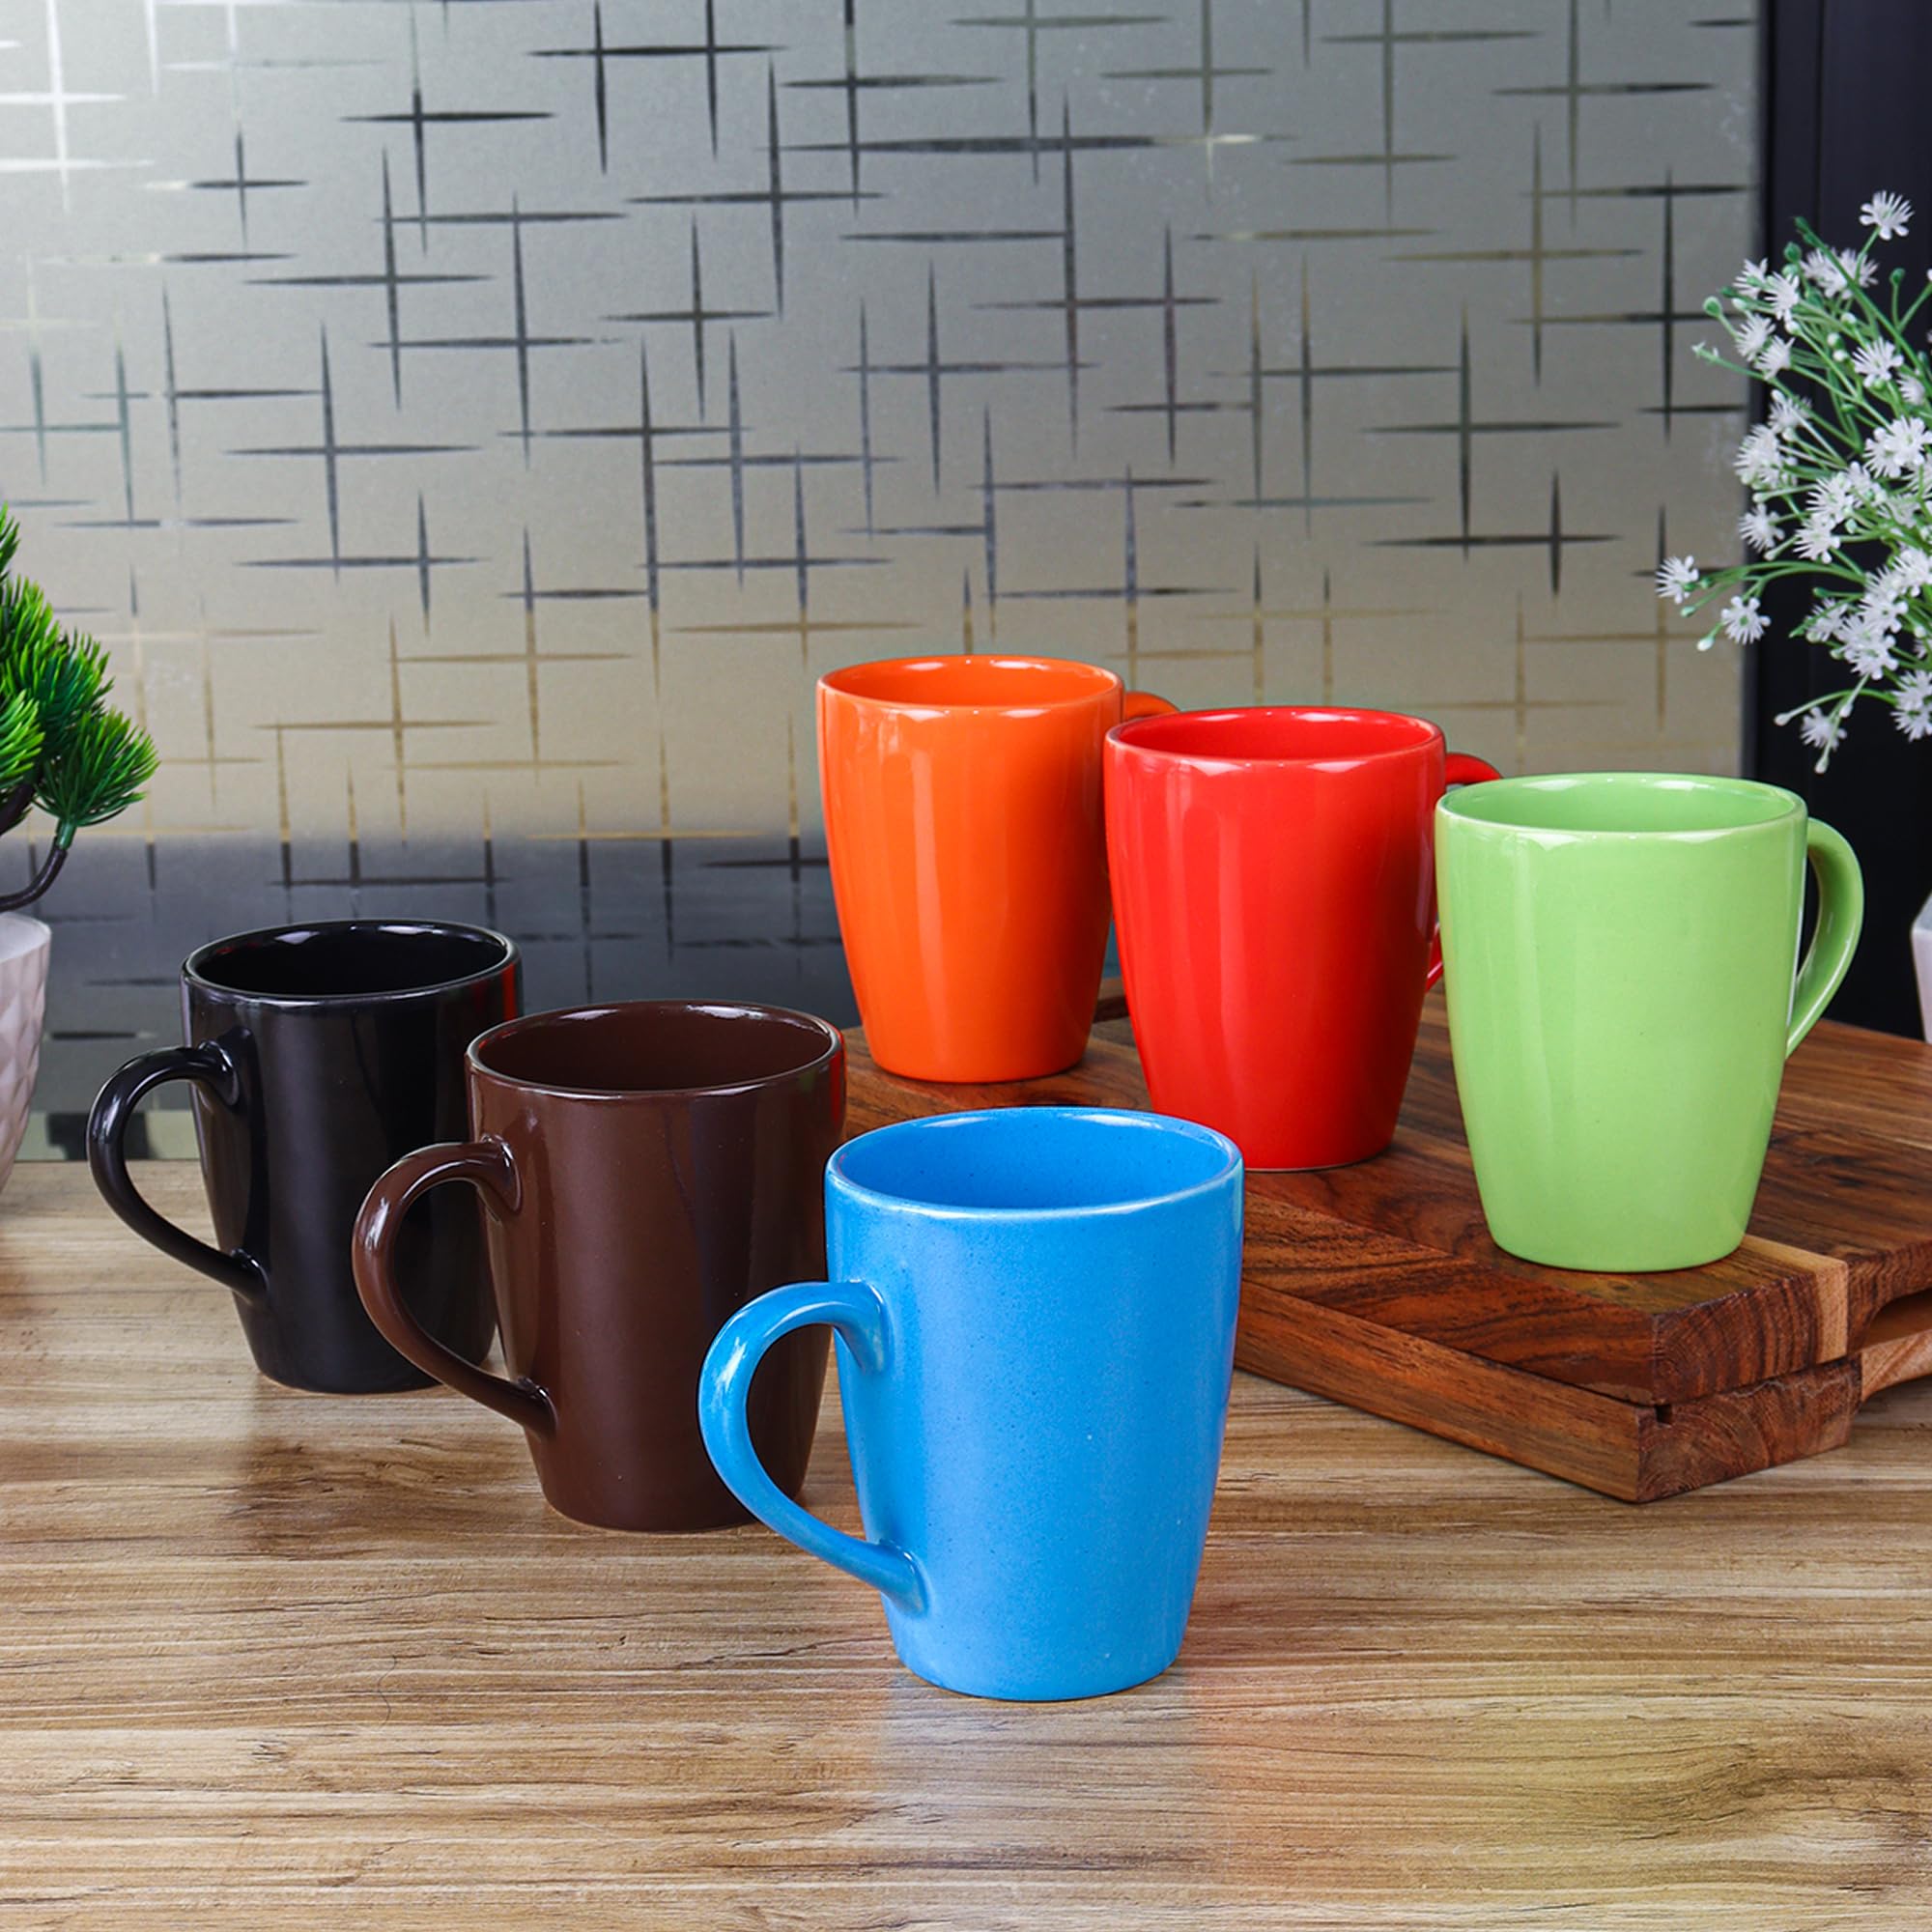 Femora India Multicolor Ceramic Coffee Mugs, Tea Mugs, Ceramic Tea Cups (360 ml) - 6 Pcs Set